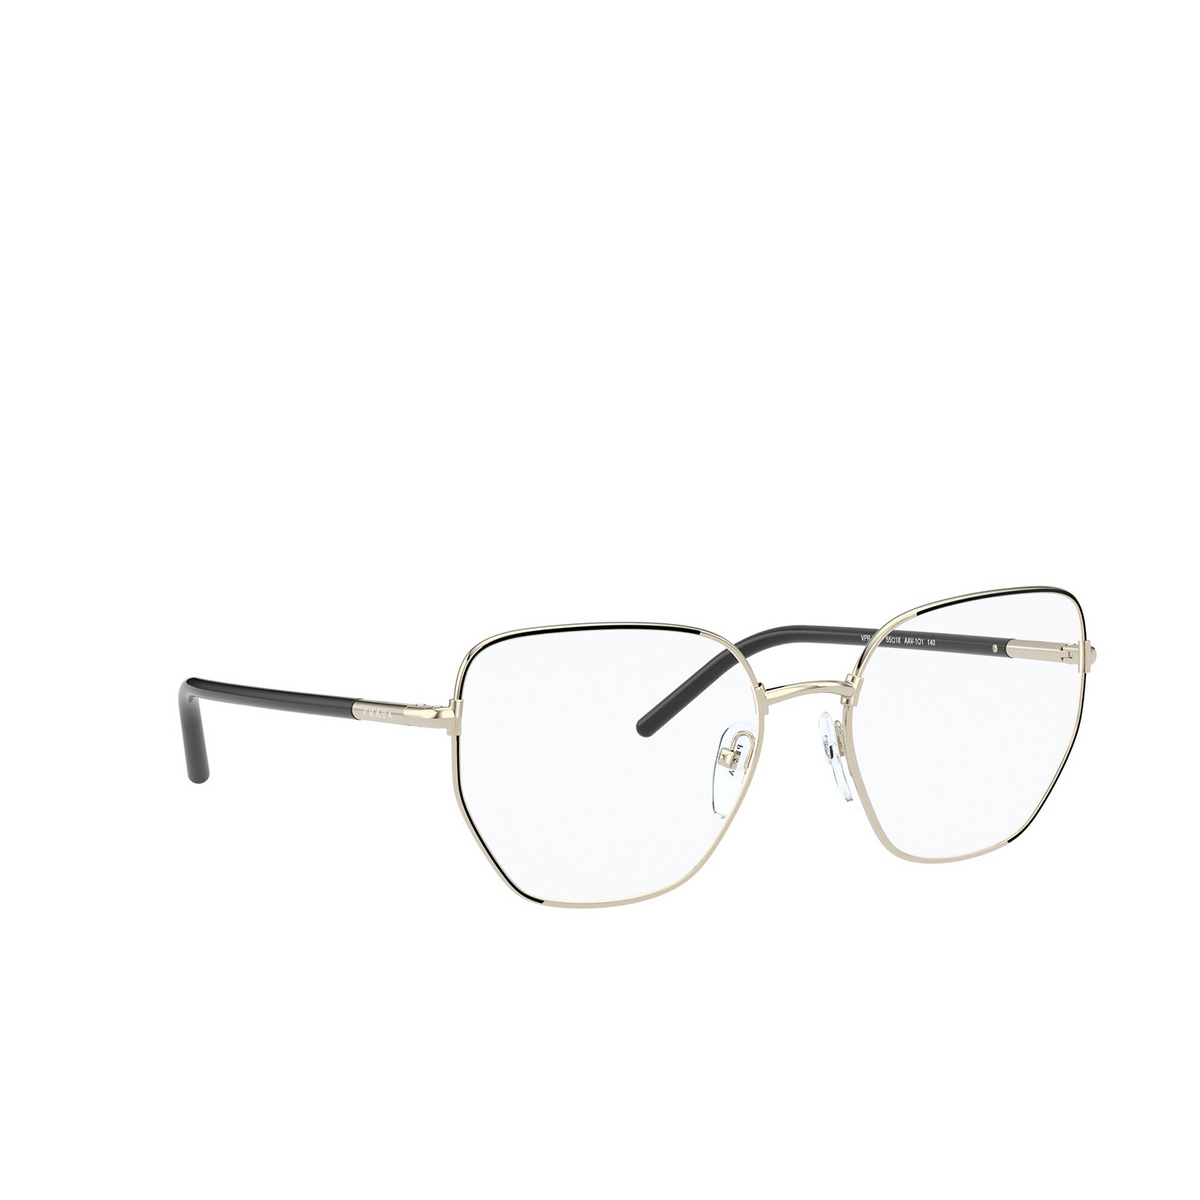 Prada® Irregular Eyeglasses: PR 60WV color Black / Pale Gold AAV1O1 - three-quarters view.